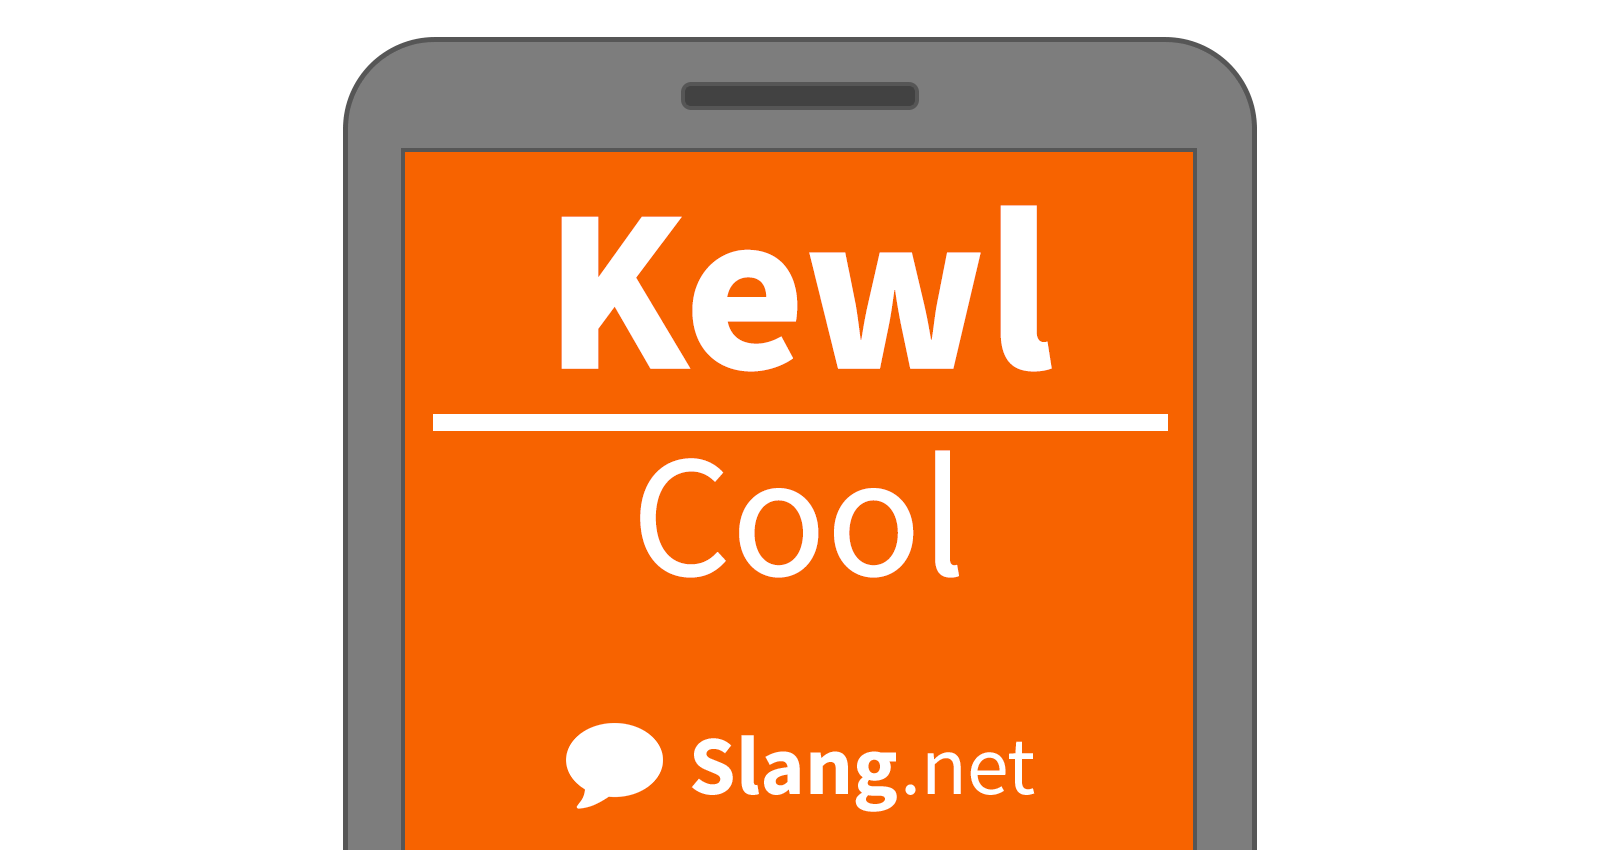 Kewl means &quot;cool&quot;